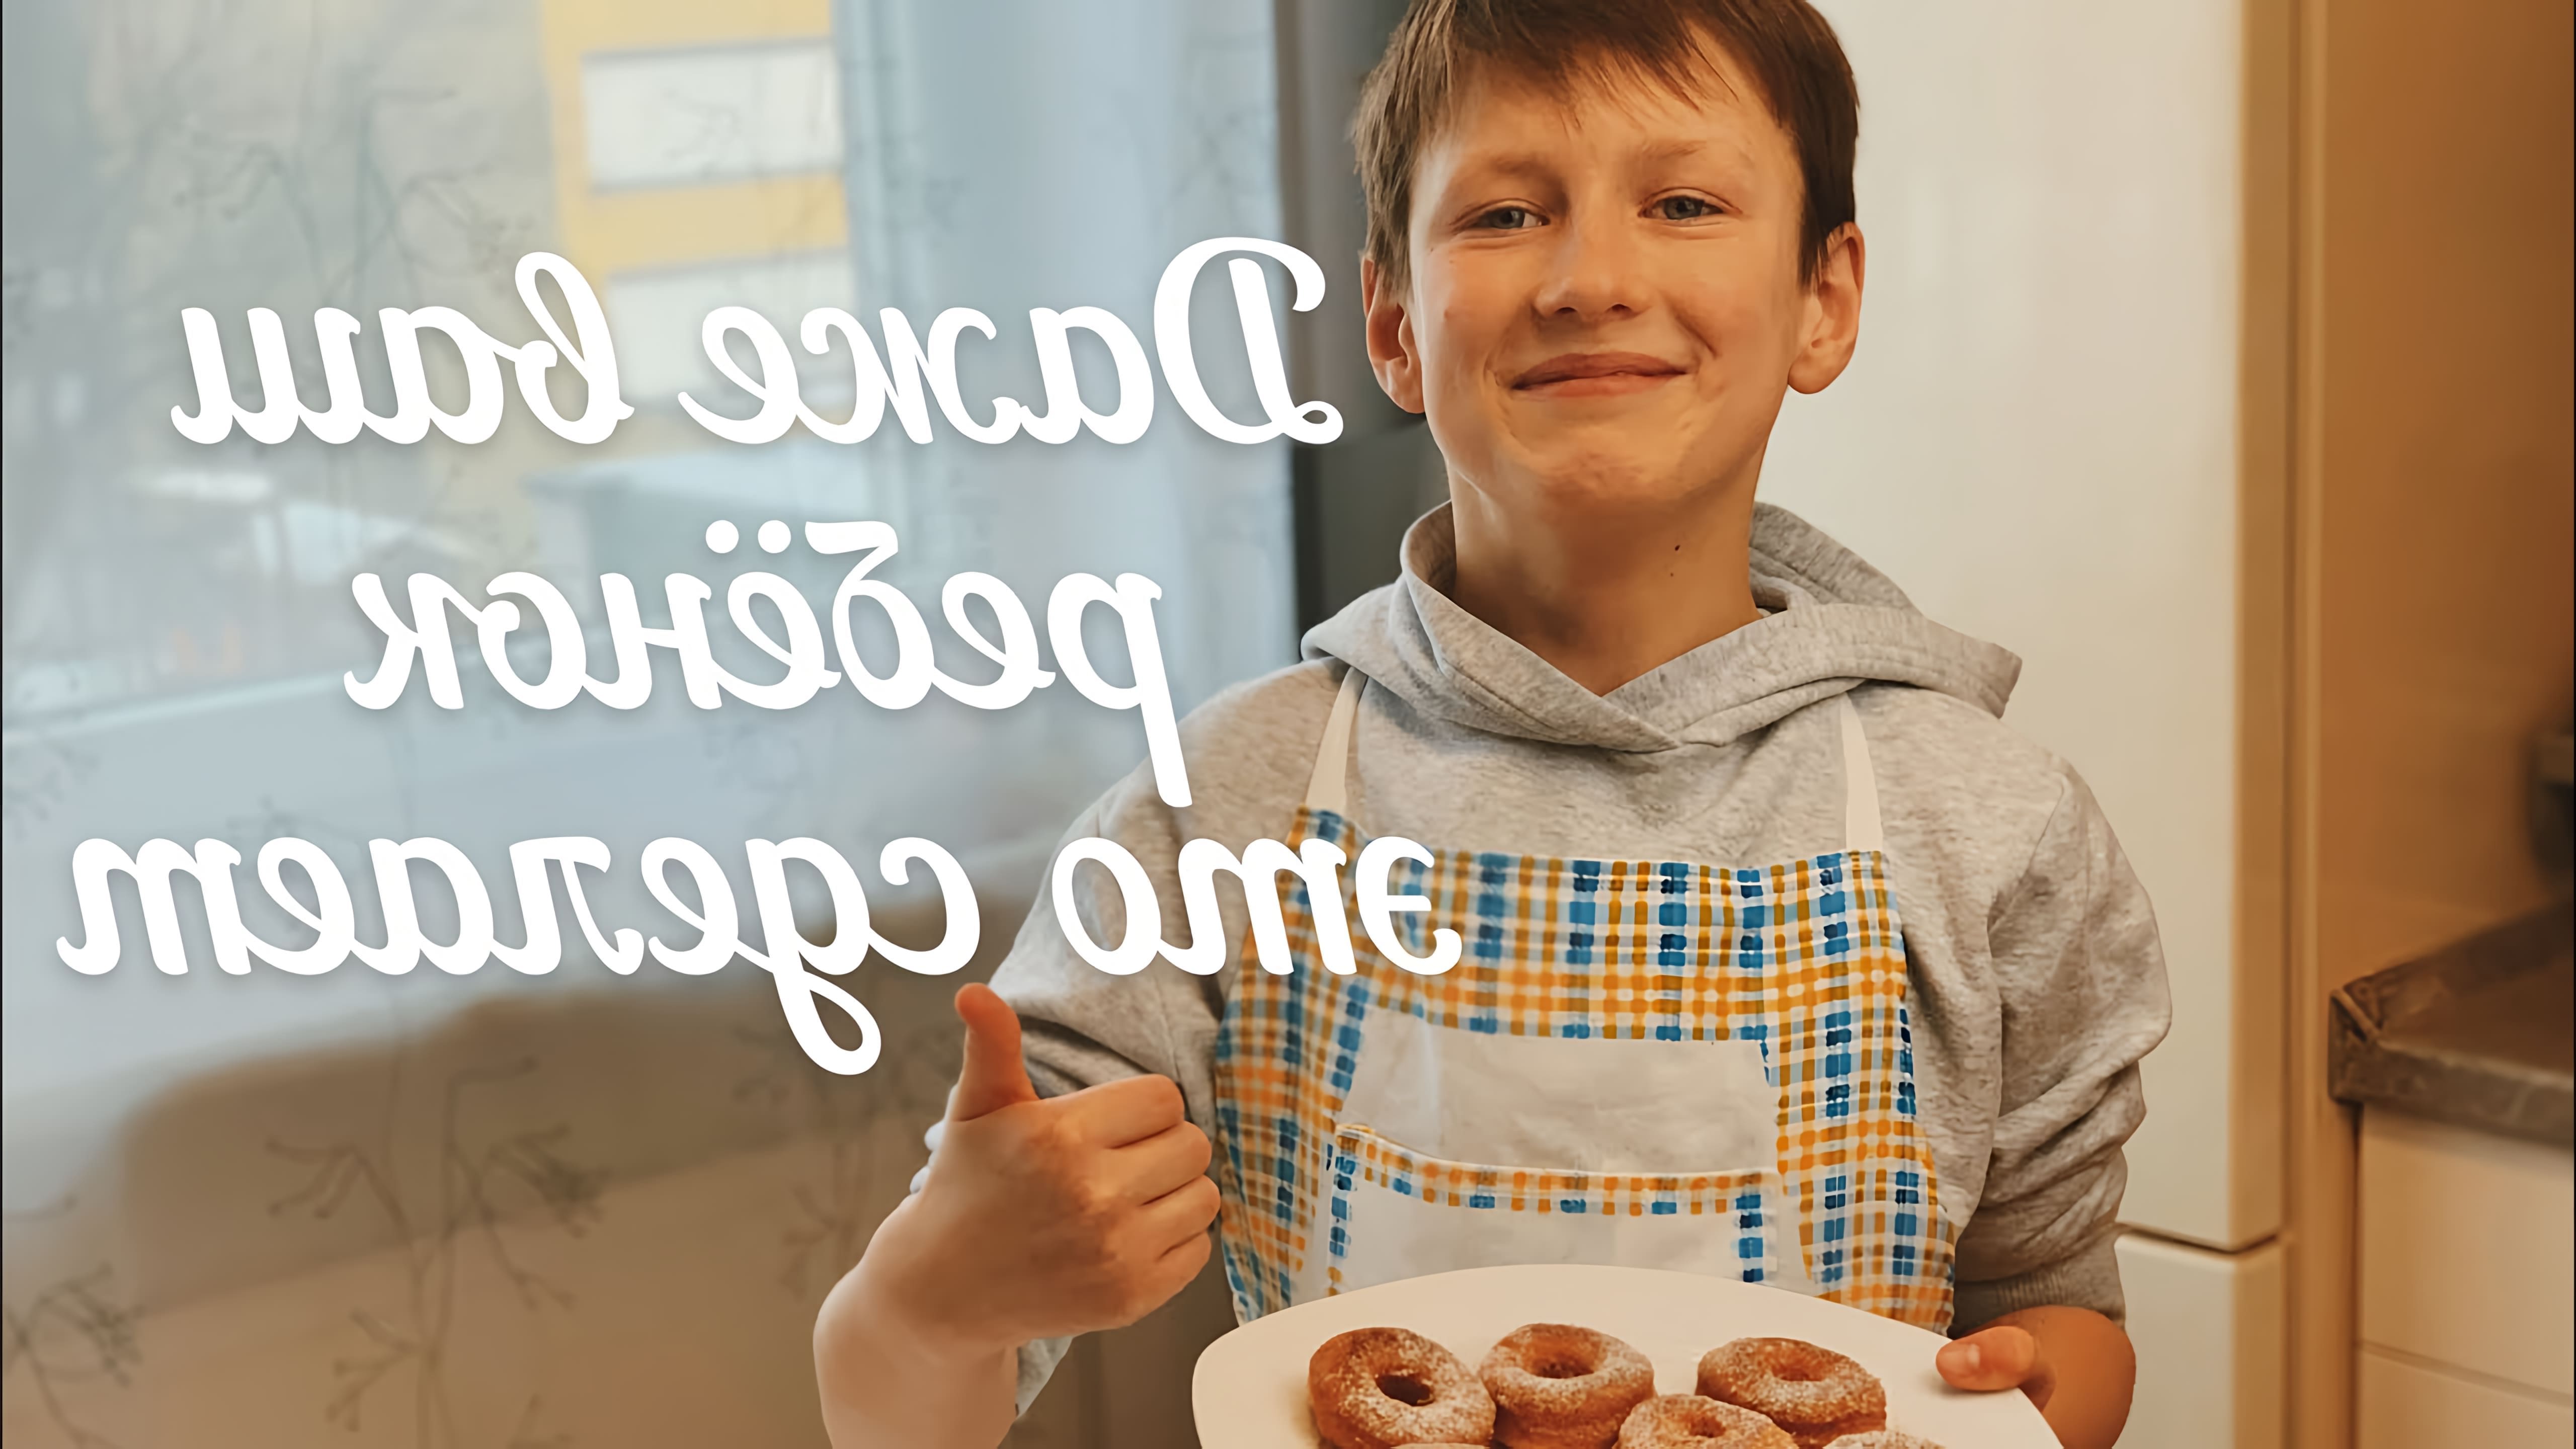 В этом видео демонстрируется рецепт приготовления пончиков без дрожжей и кефира